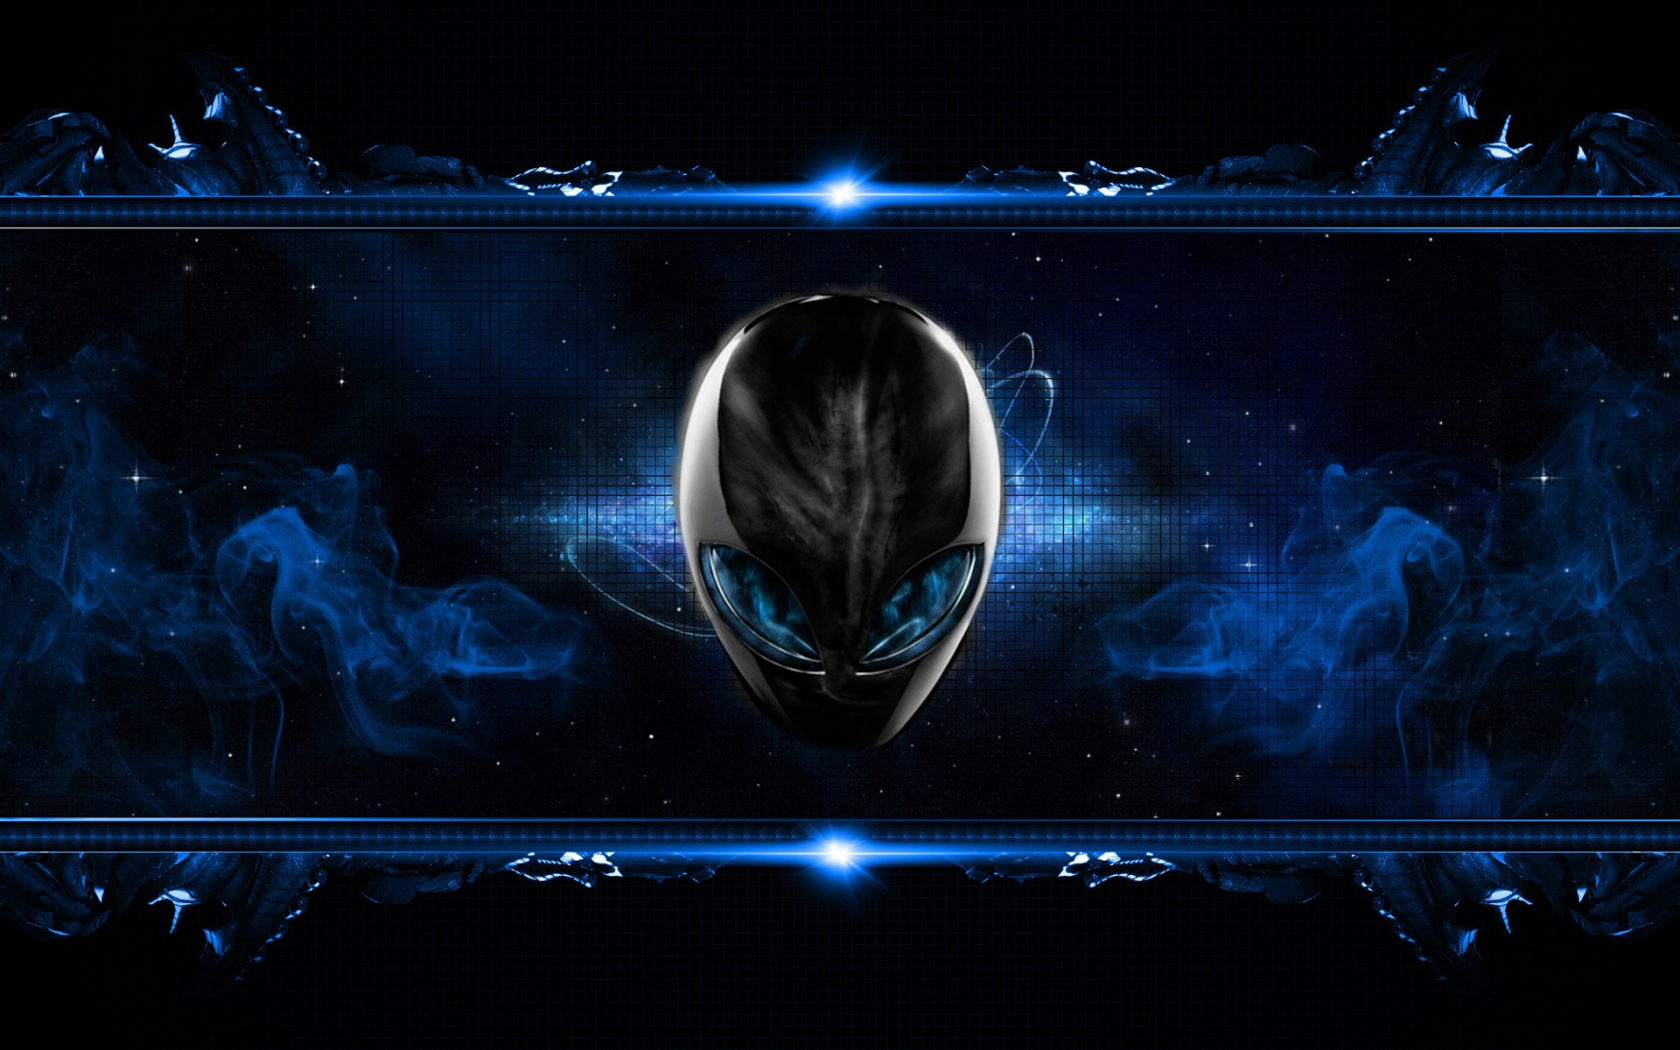 Blue Alien for 1680 x 1050 widescreen resolution